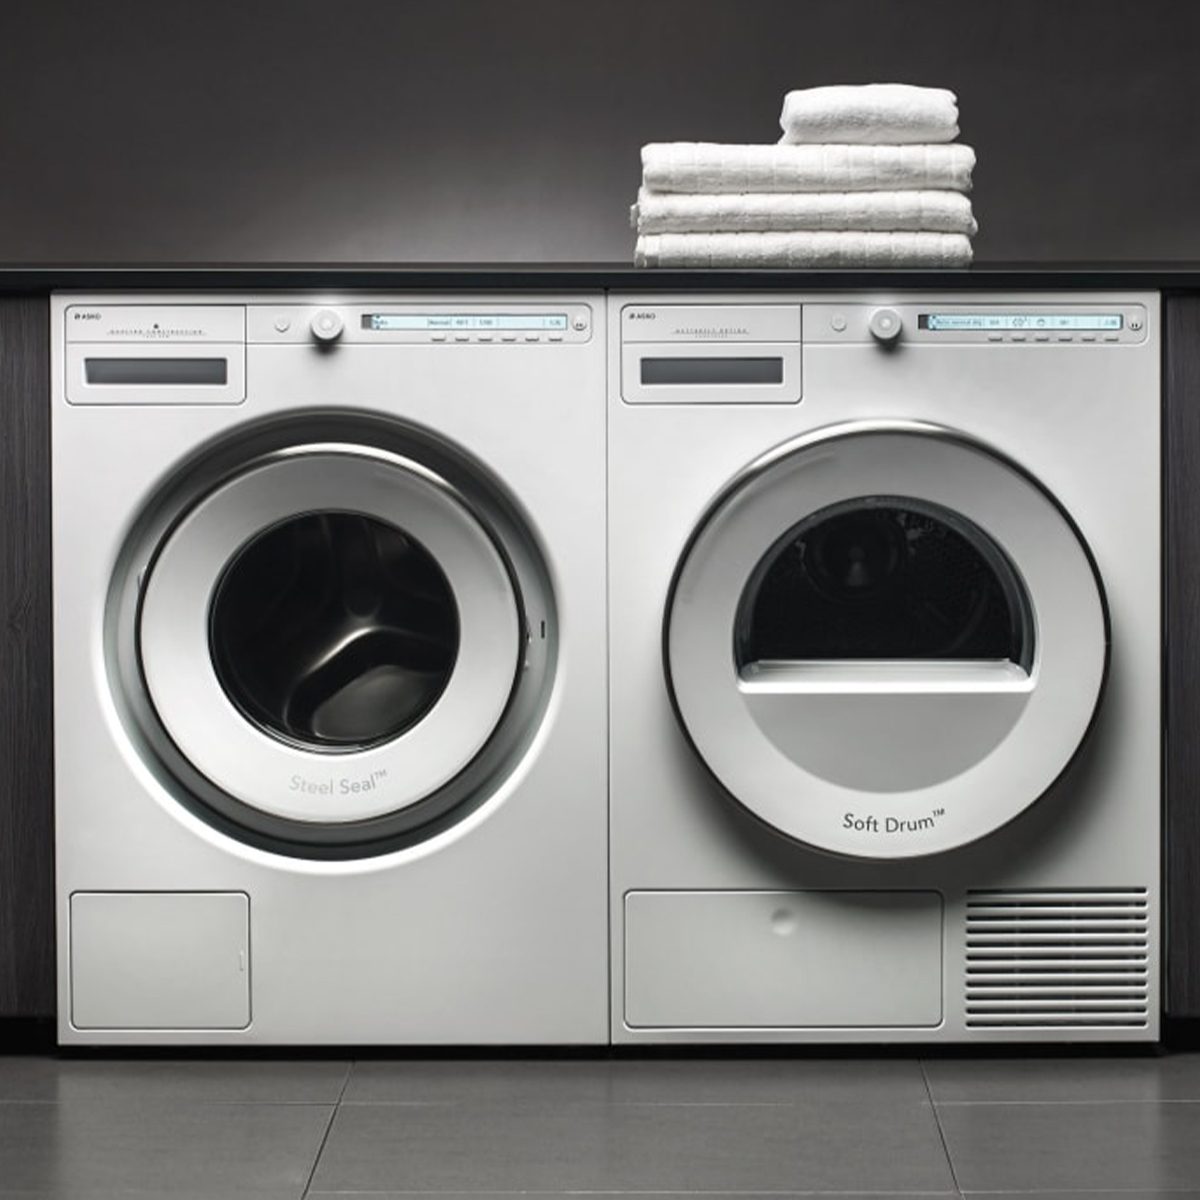 5 Best Industrial Washing Machine Brands In 2023